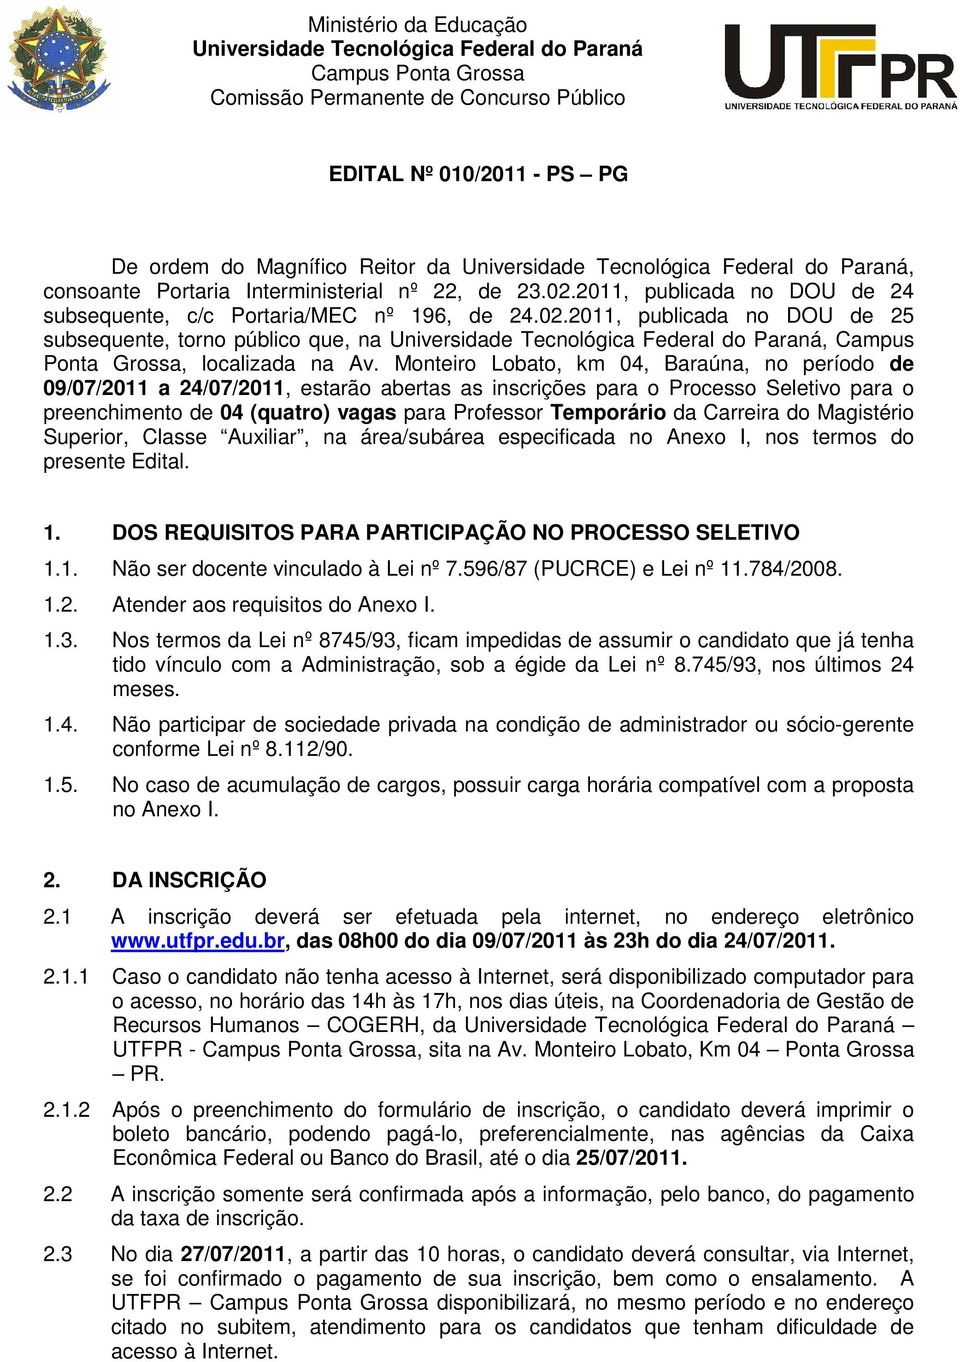 Monteiro Lobato, km 04, Baraúna, no período de 09/07/2011 a 24/07/2011, estarão abertas as inscrições para o Processo Seletivo para o preenchimento de 04 (quatro) vagas para Professor Temporário da